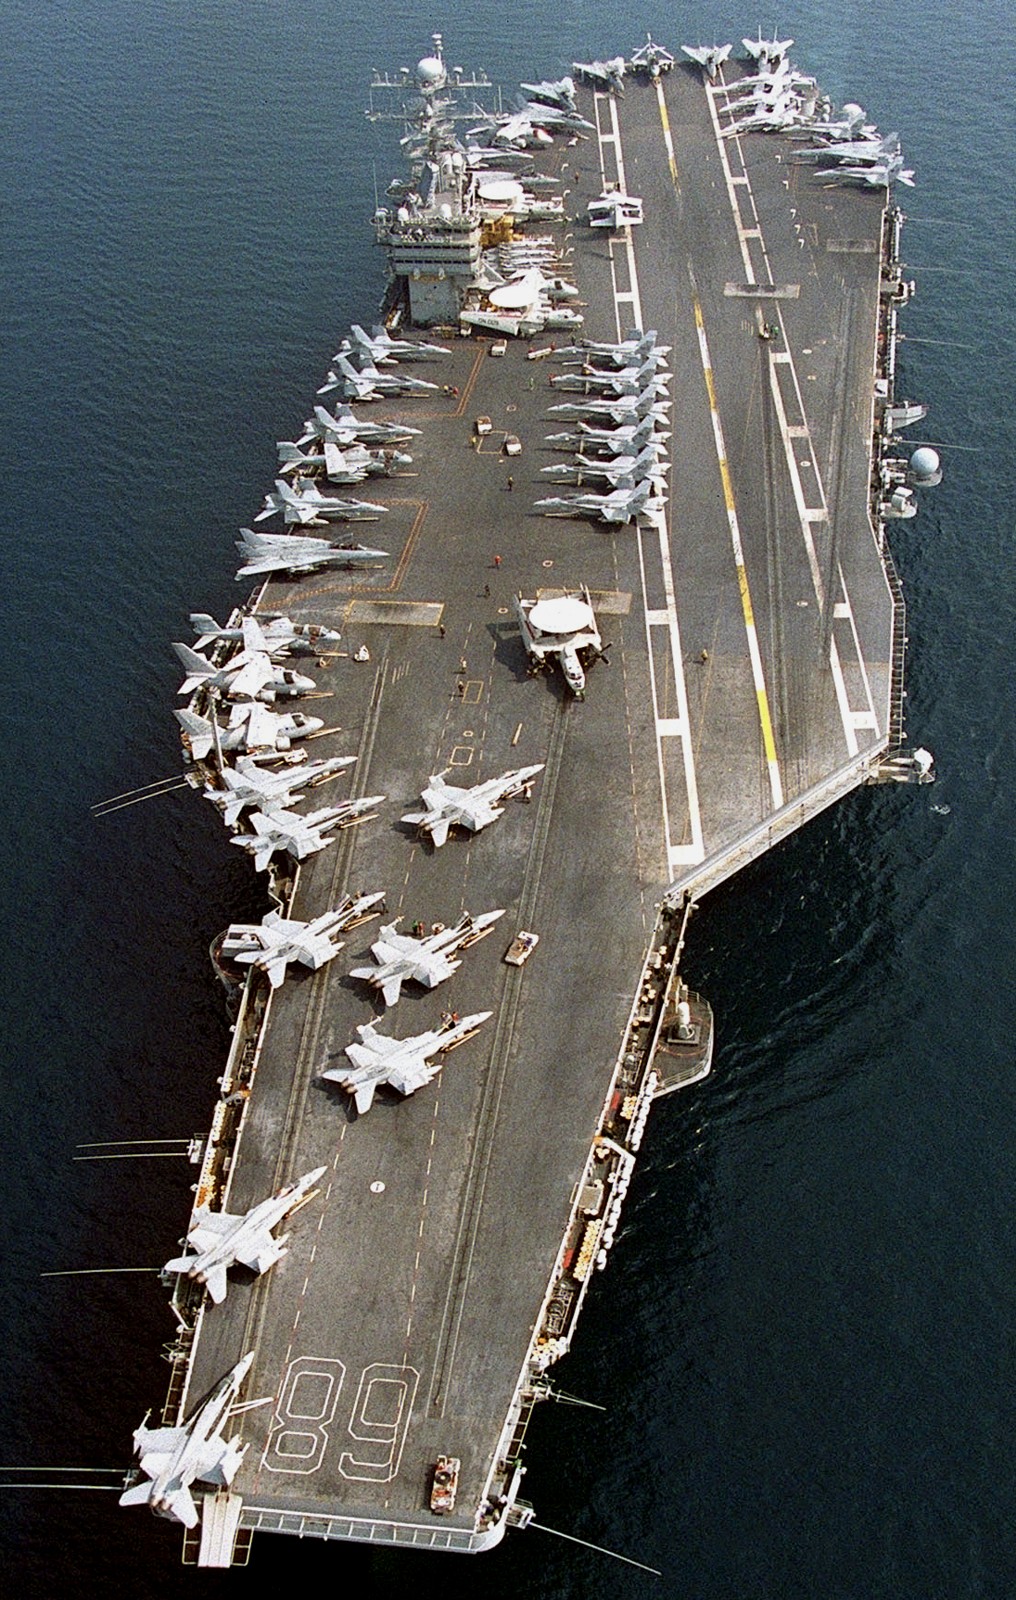 cvn-68 uss nimitz aircraft carrier air wing cvw-9 us navy southern watch persian gulf 120